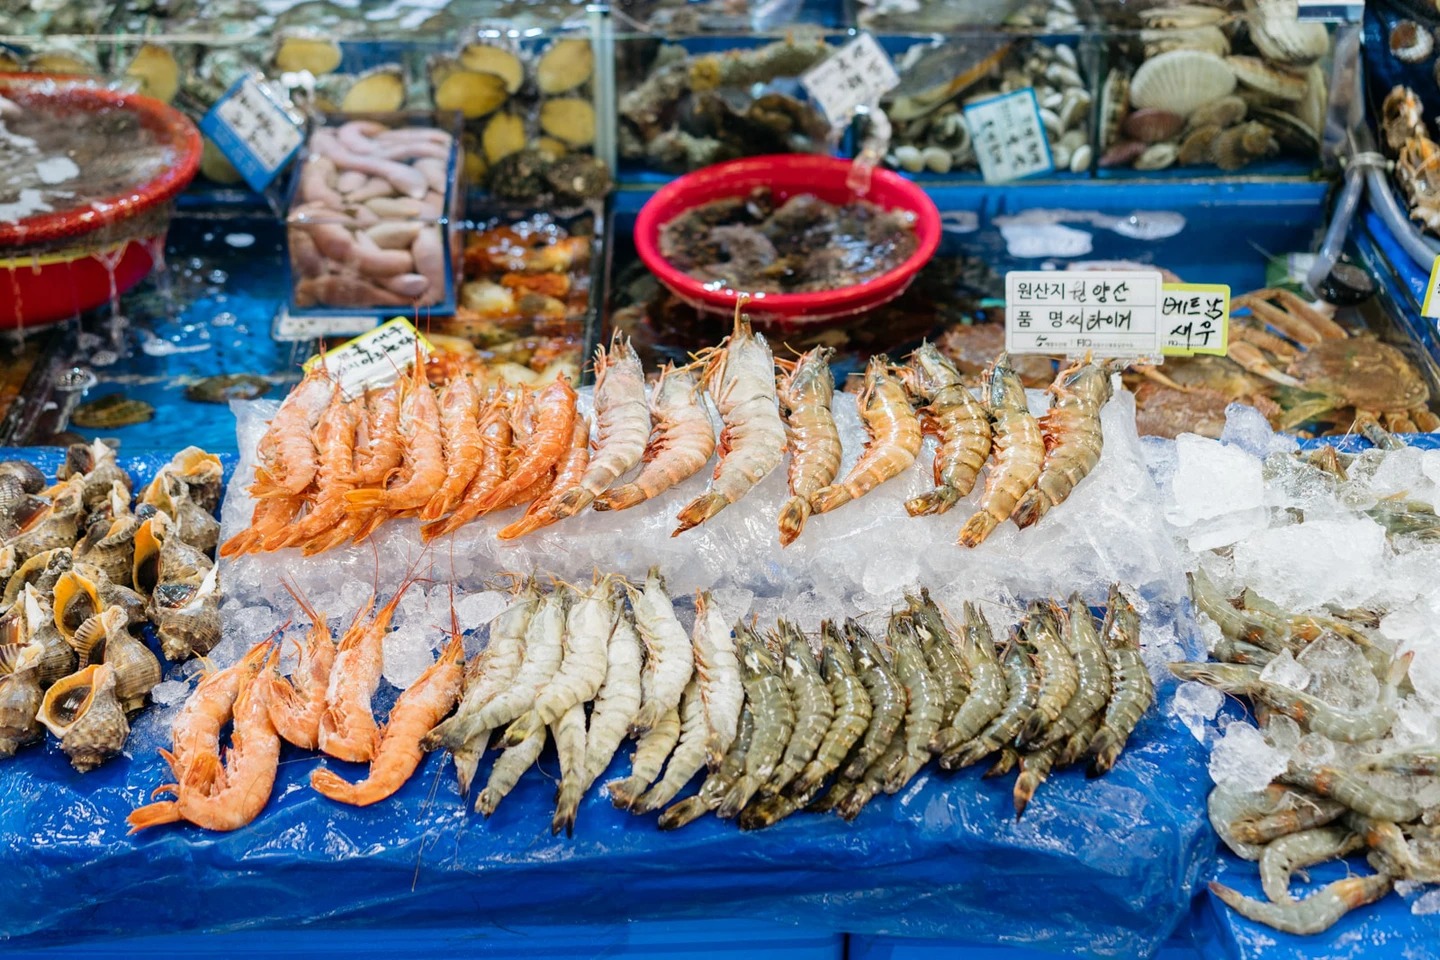 Cô gái Việt kể chuyện đi chợ hải sản tươi sống nổi tiếng Hàn Quốc: Có thể ăn ngay tại chợ luôn, 4 triệu đồng một bữa không gọi là đắt - Ảnh 4.